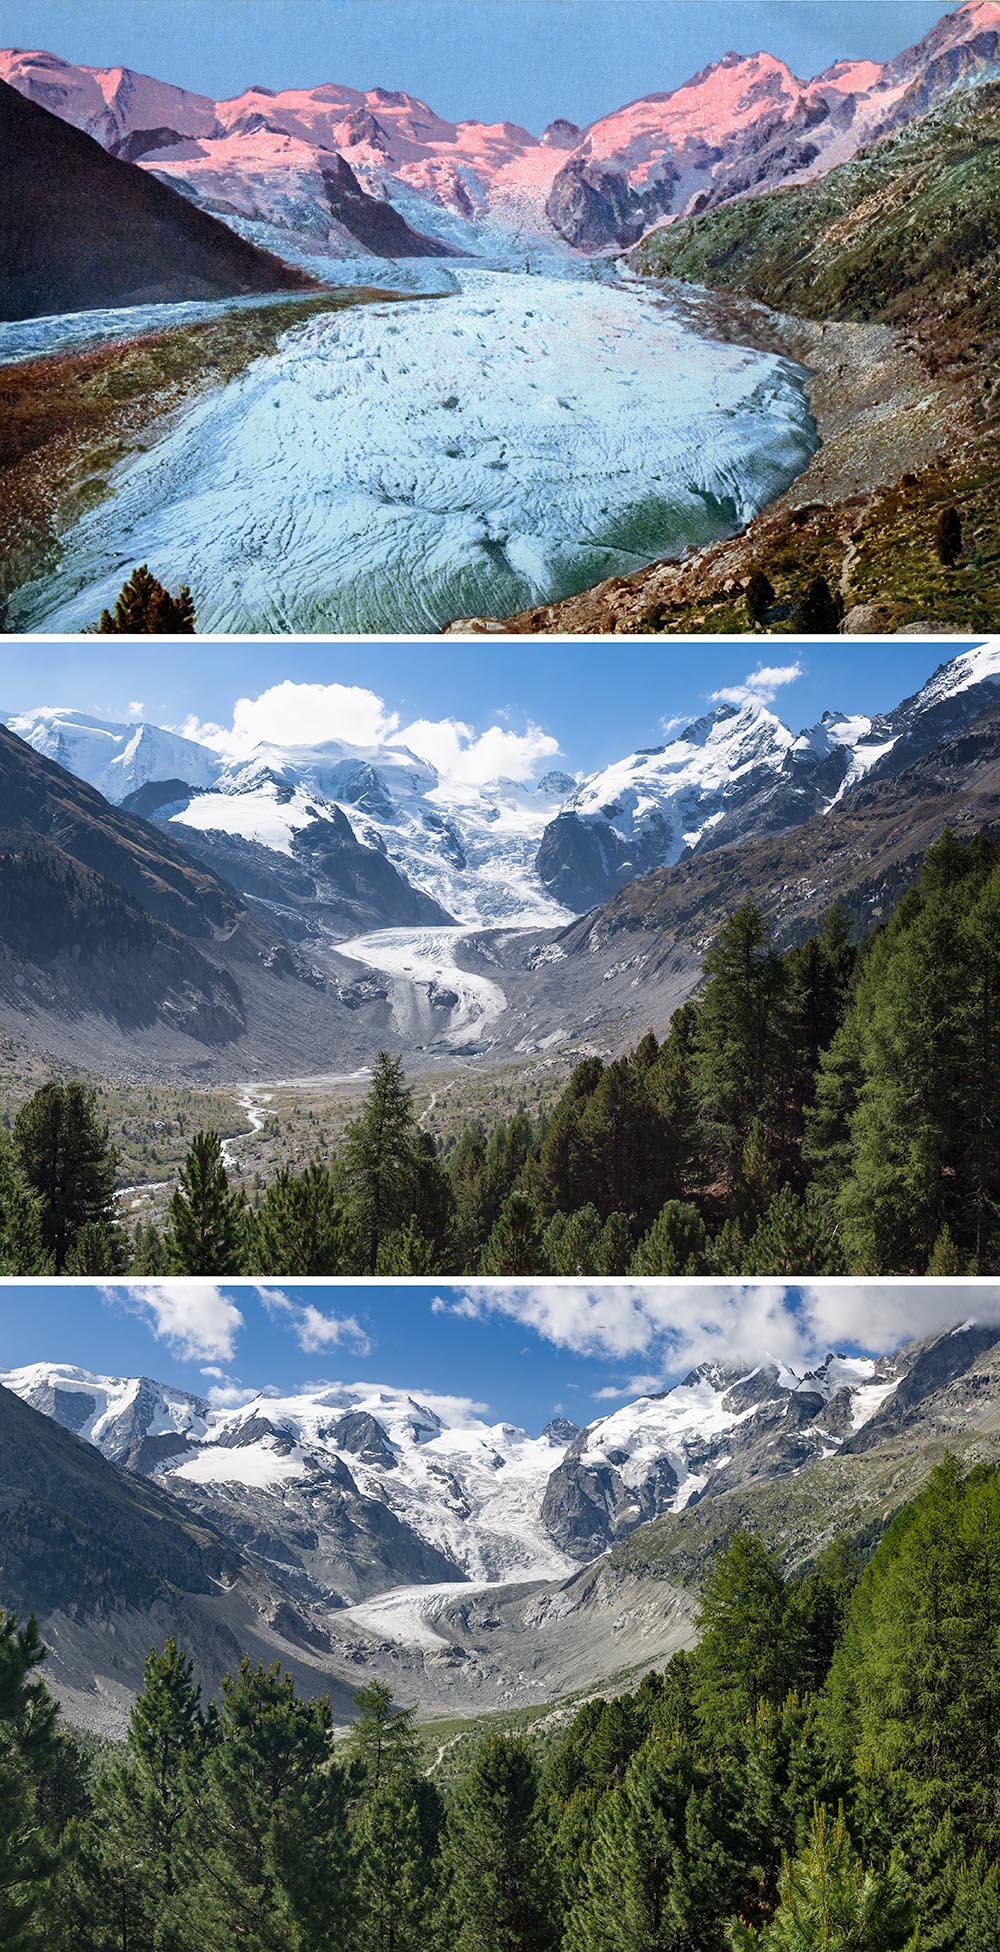 Glacier recession in the Swiss Alps